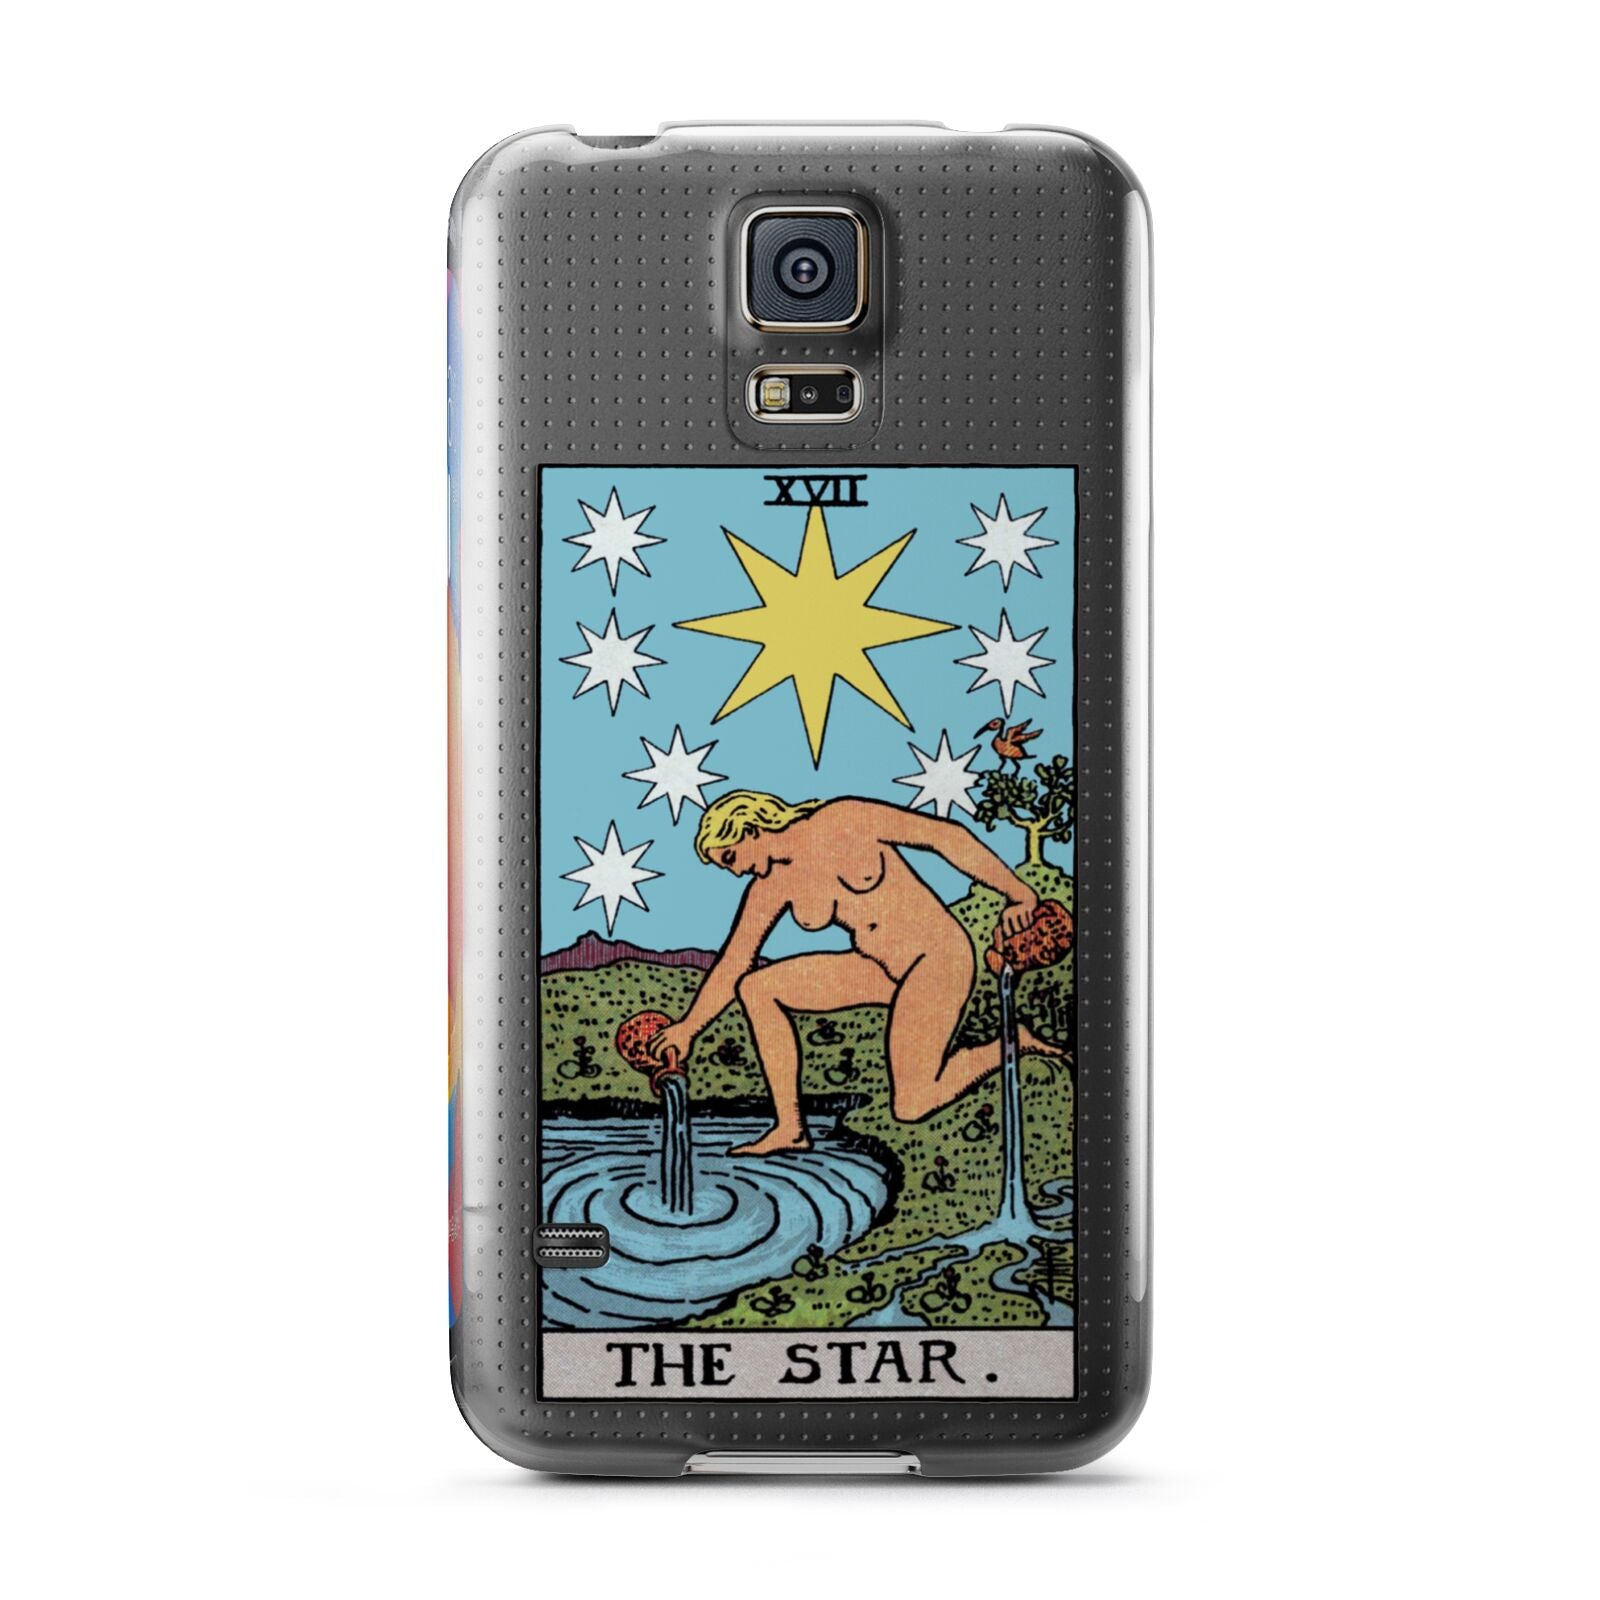 The Star Tarot Card Samsung Galaxy S5 Case